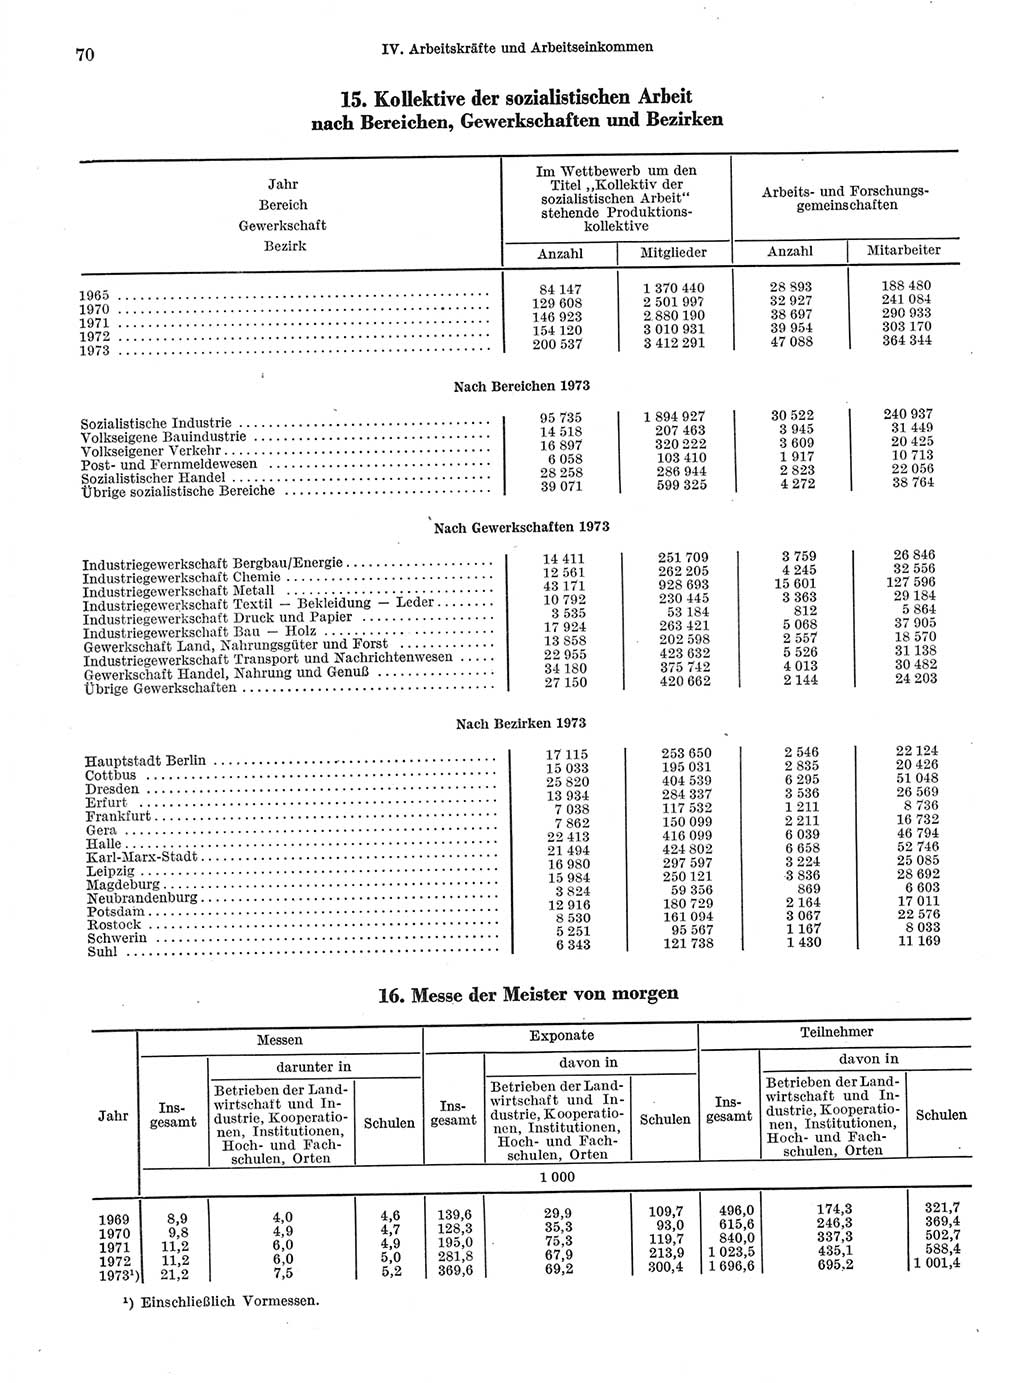 Statistisches Jahrbuch der Deutschen Demokratischen Republik (DDR) 1974, Seite 70 (Stat. Jb. DDR 1974, S. 70)